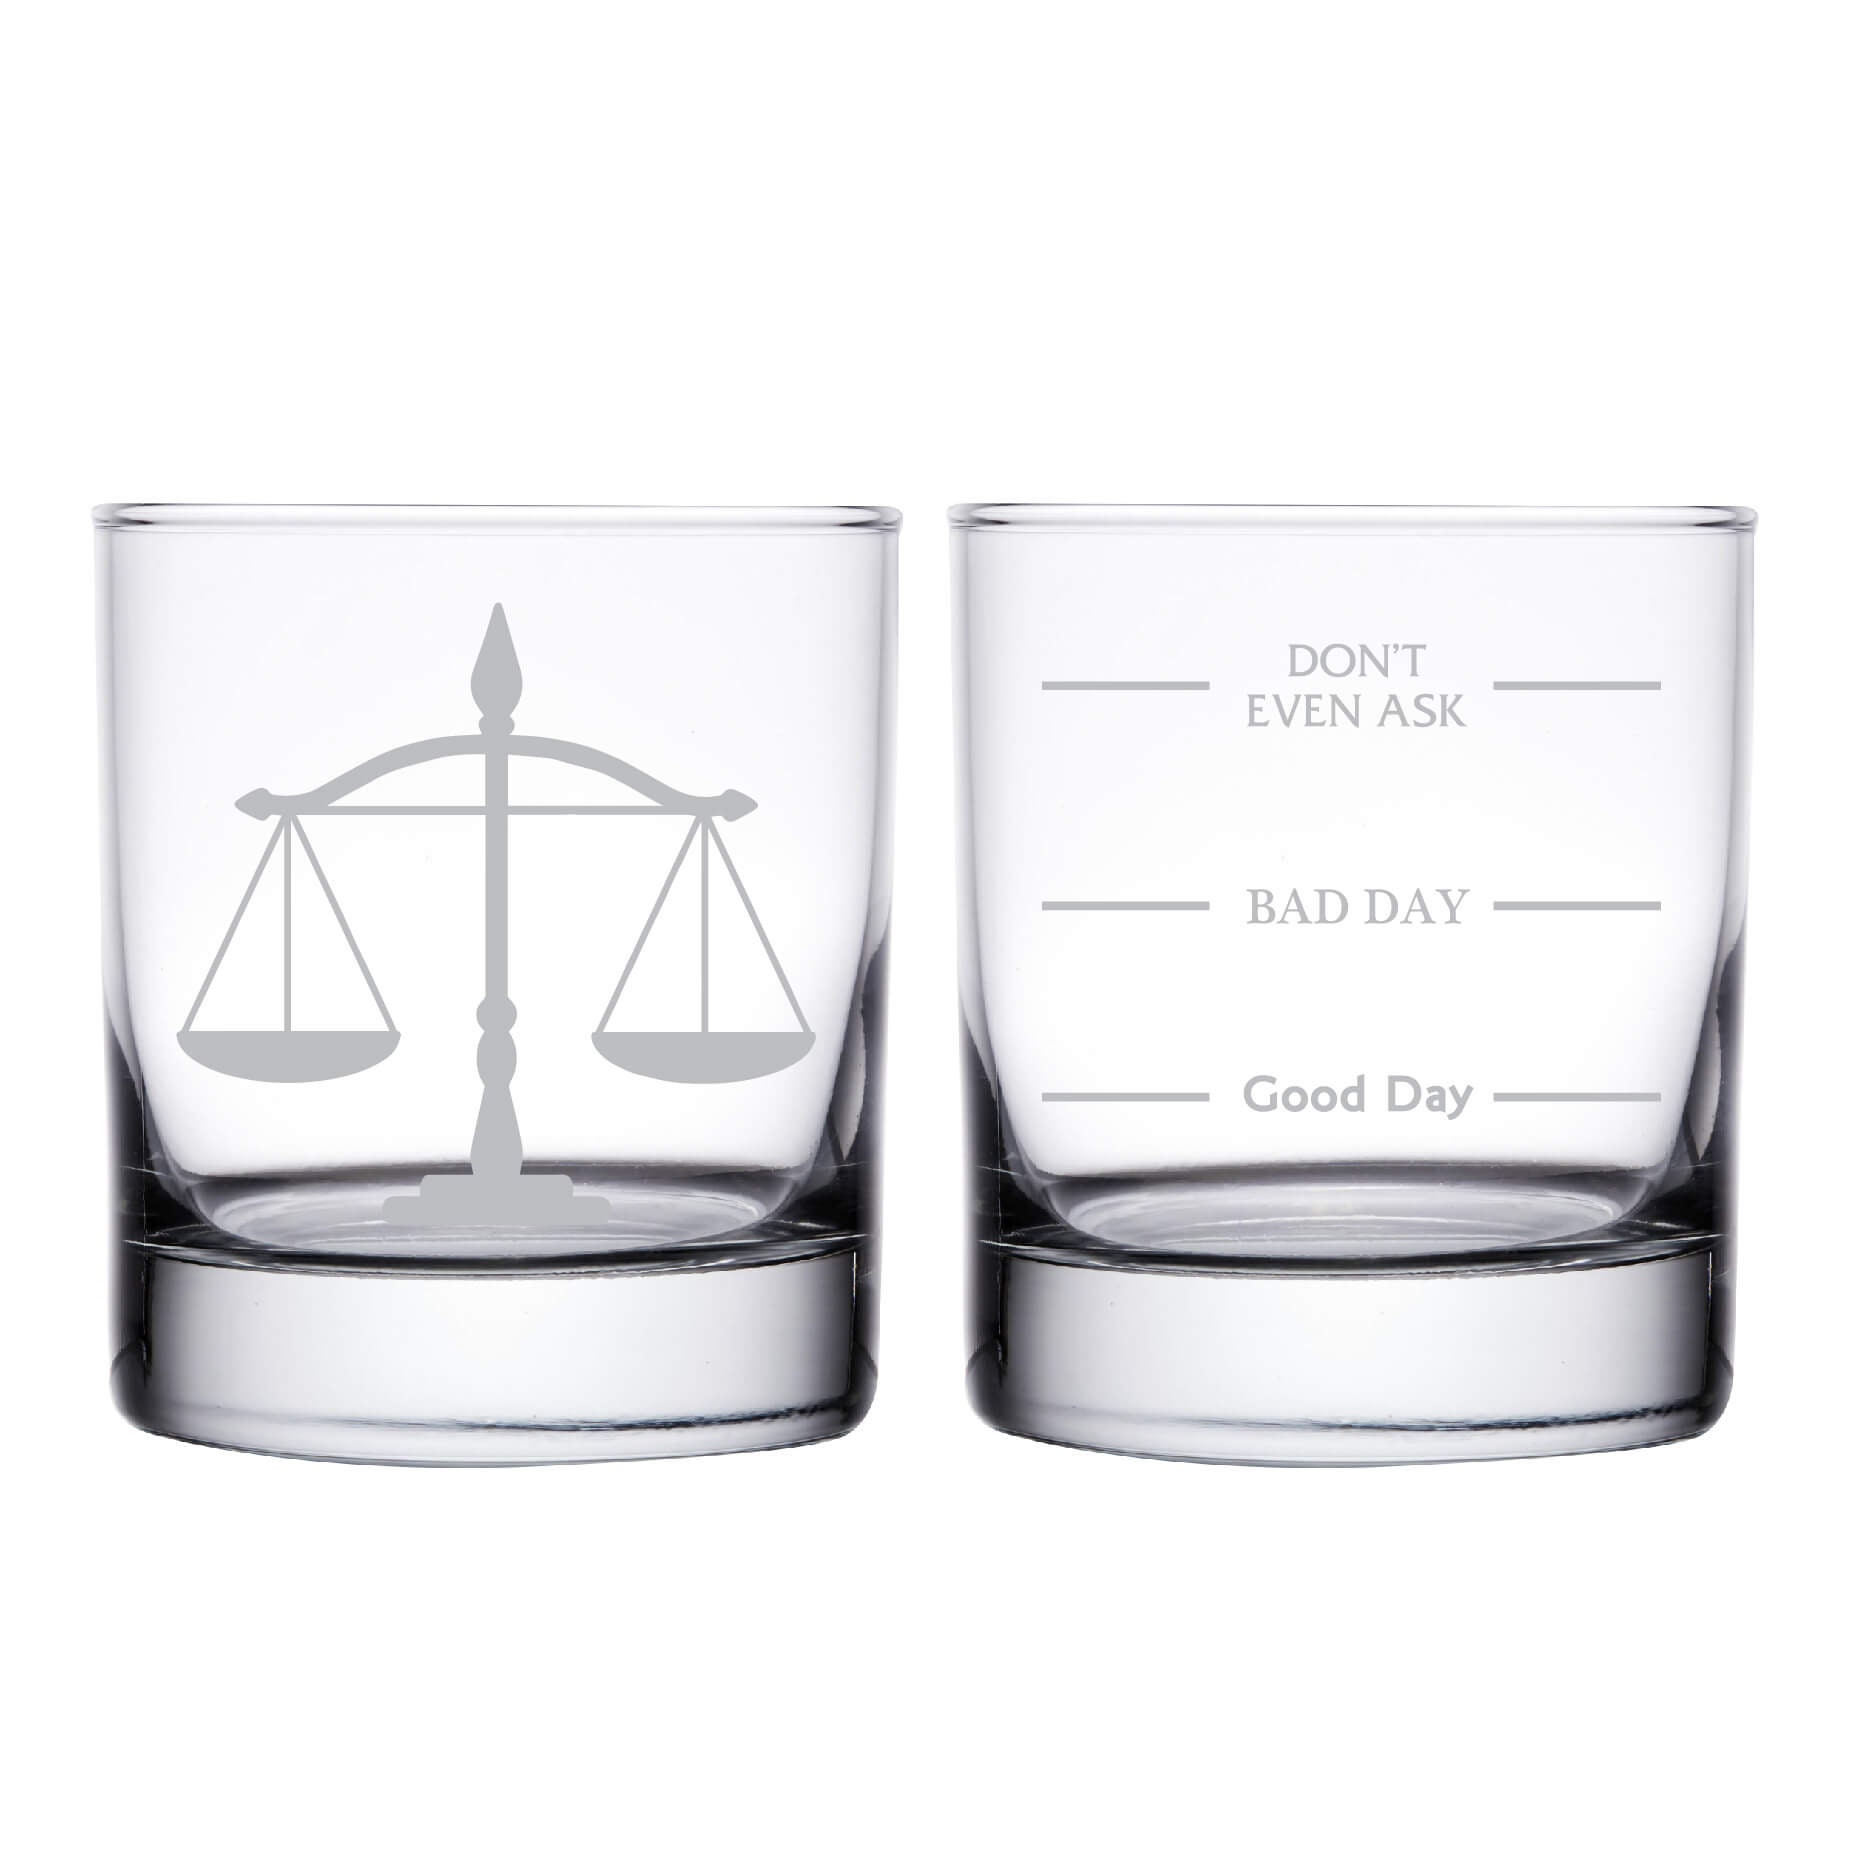  Vasos de whisky divertidos de abogado, doble cara Good Day Bad  Day Don't Even Ask Lawyer Whisky, regalos de cumpleaños para asistente  legal, abogado, asistente legal o estudiante de derecho, regalos 